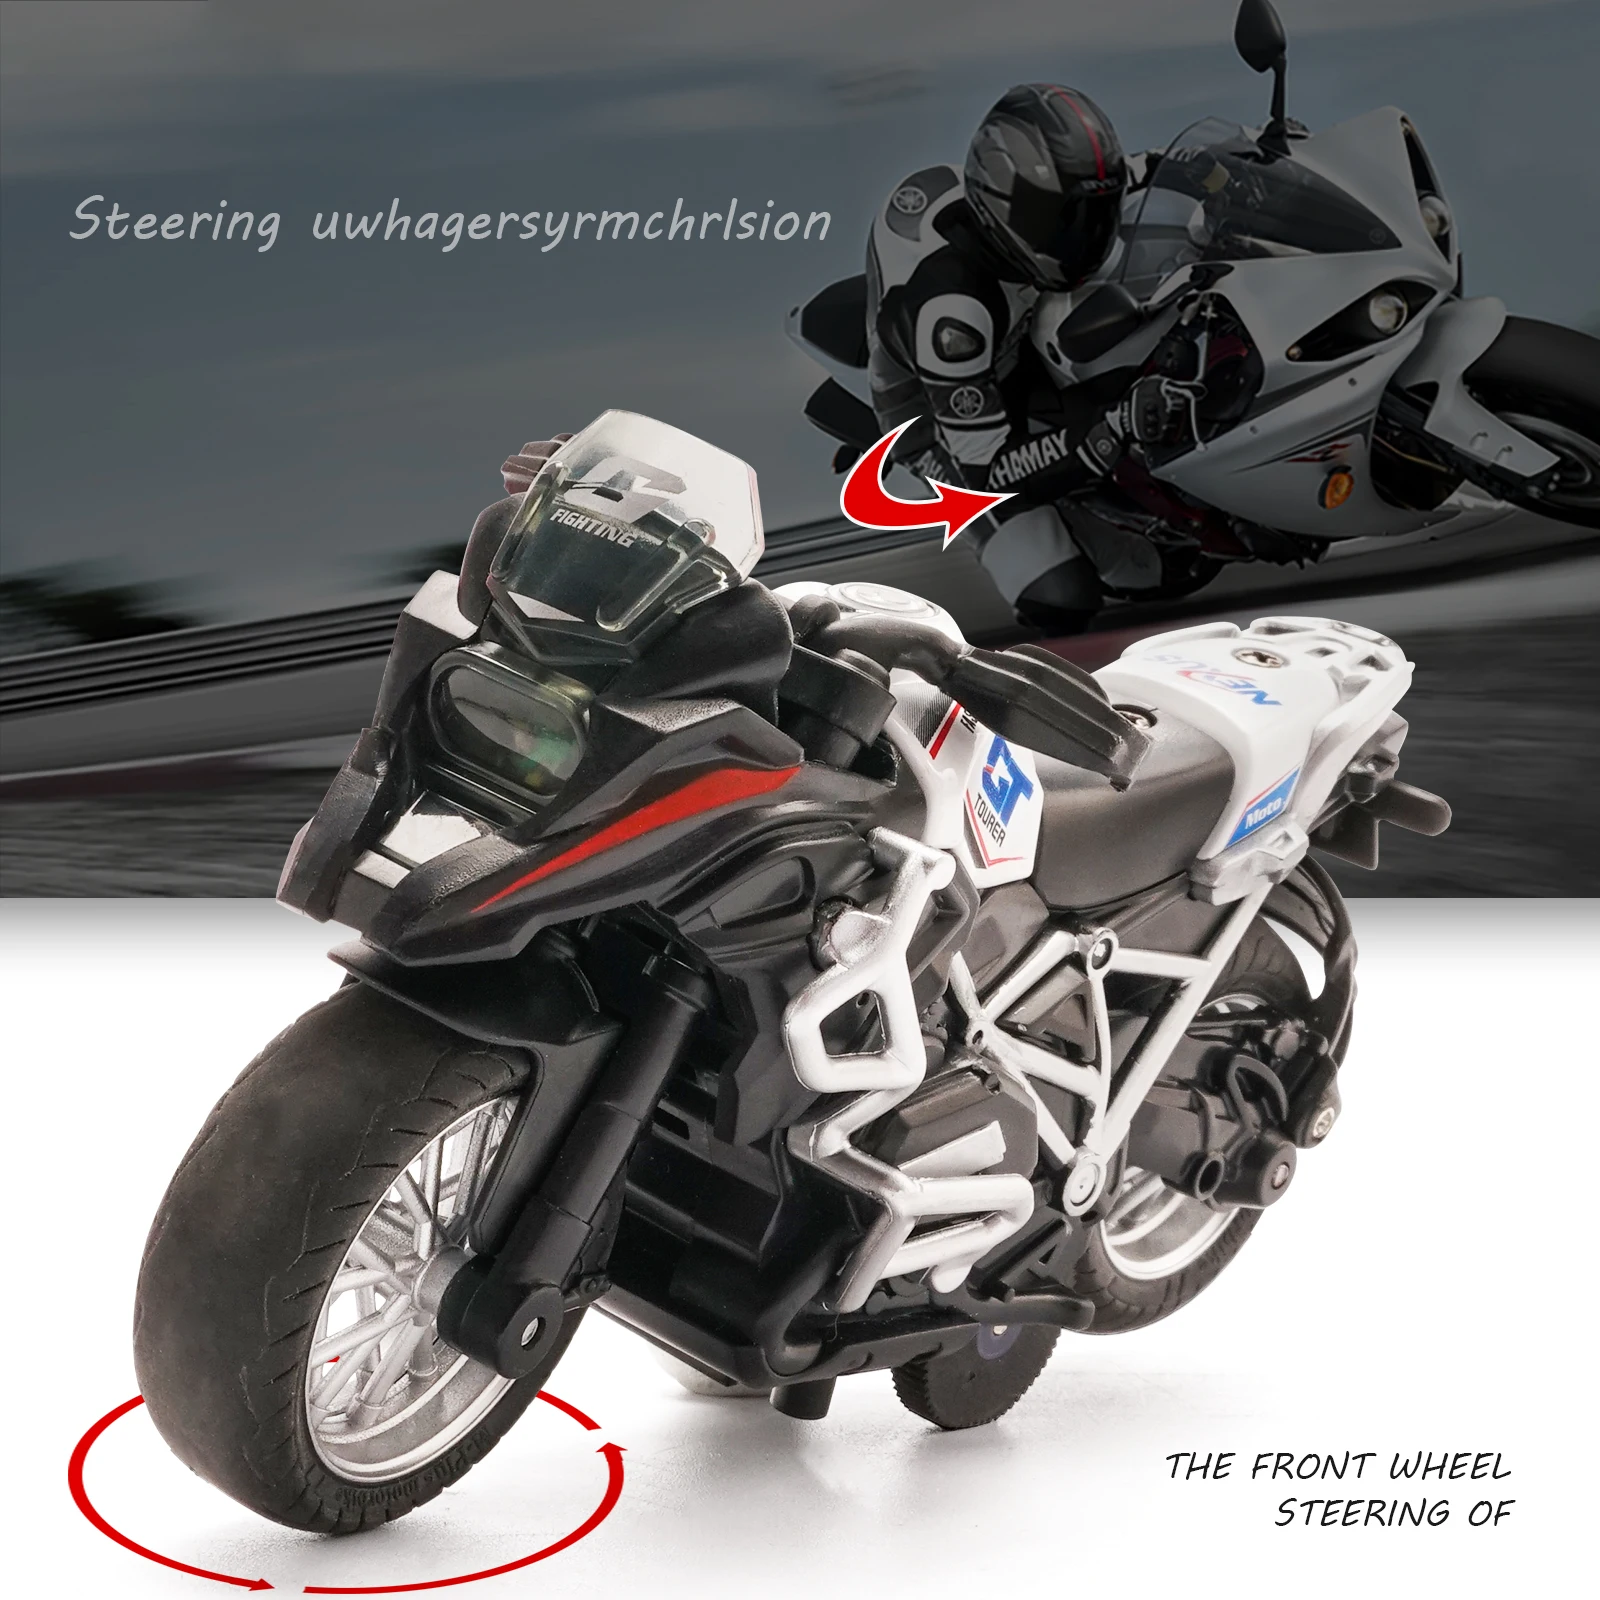 Motociklo Žaislas Traukti Atgal Transporto priemones Su Šviesos ir Garsai, Žaisliniai Motociklai Berniukams,Motociklas žaislai Vaikams 2-9 Metai